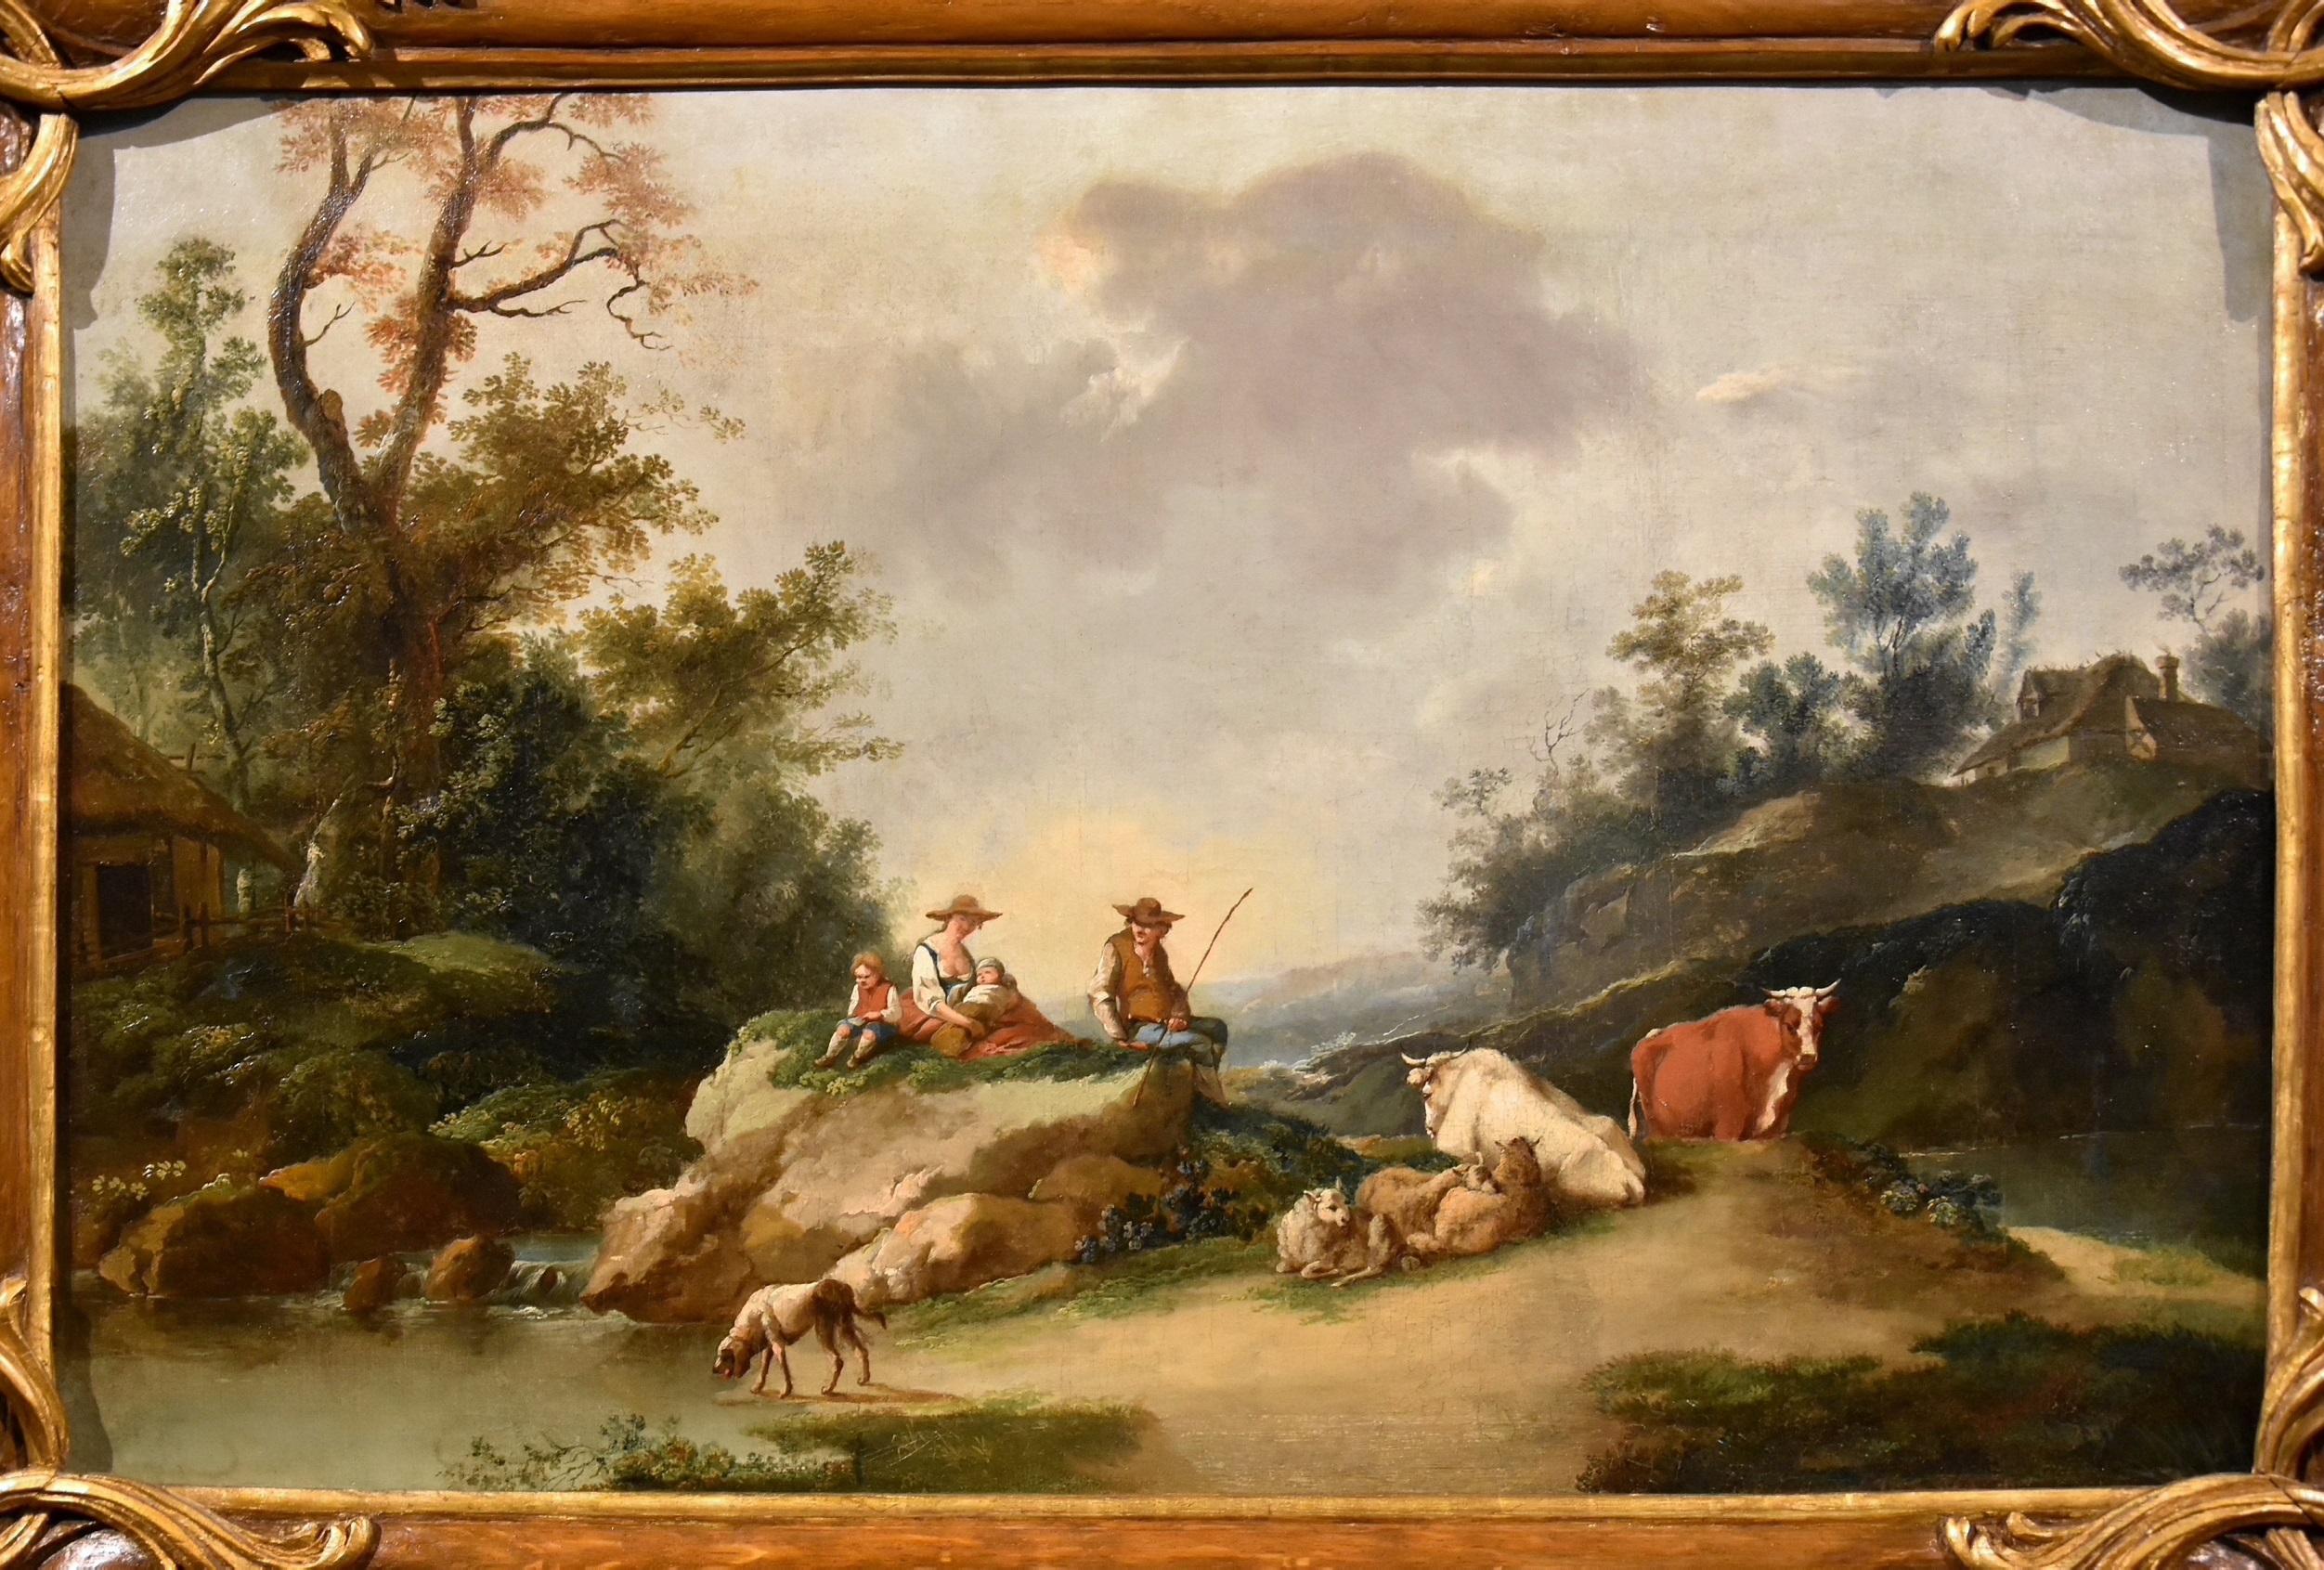 Landschaft Zuccarelli, Gemälde Öl auf Leinwand, Alter Meister, Italienische Ansicht, 18. Jahrhundert (Alte Meister), Painting, von Francesco Zuccarelli (Pitigliano 1702 - Florence 1788)